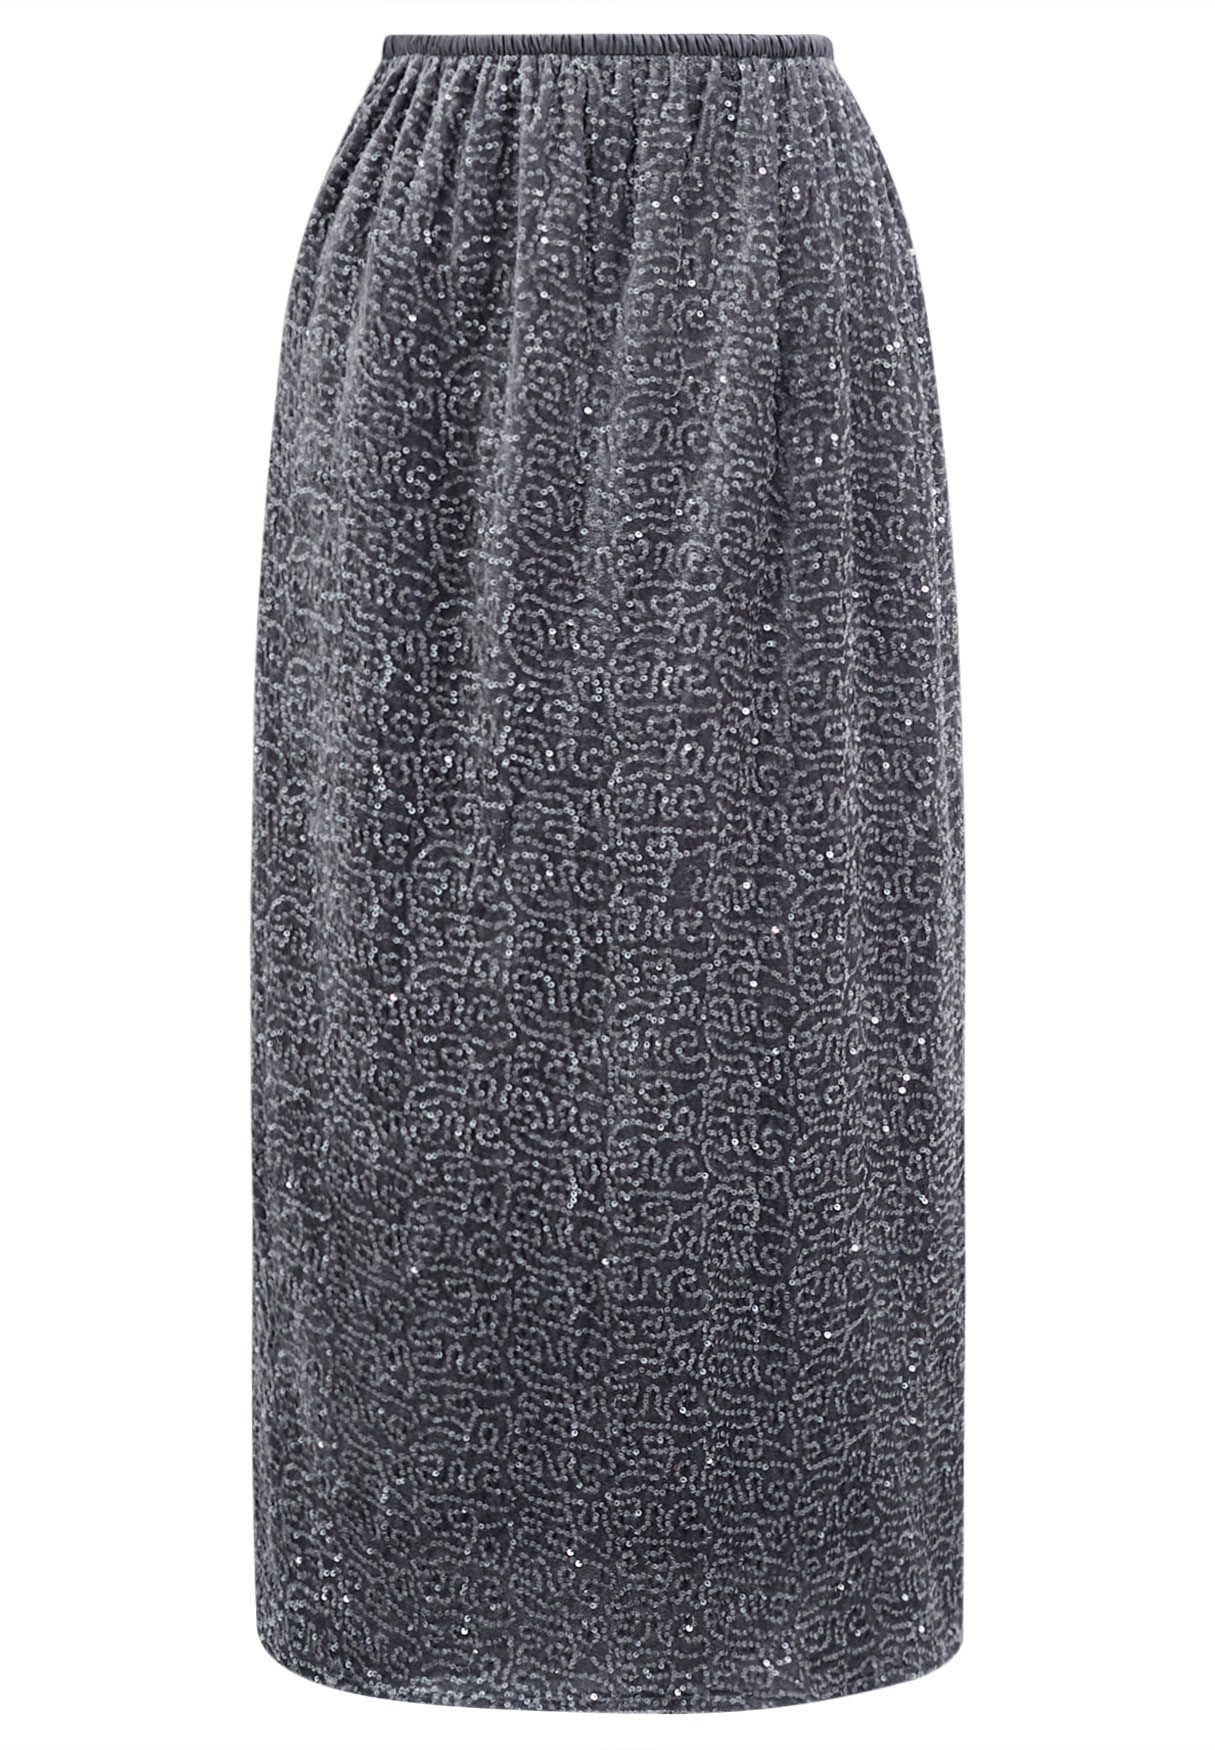 Sequin Adorned Velvet Pencil Skirt in Grey